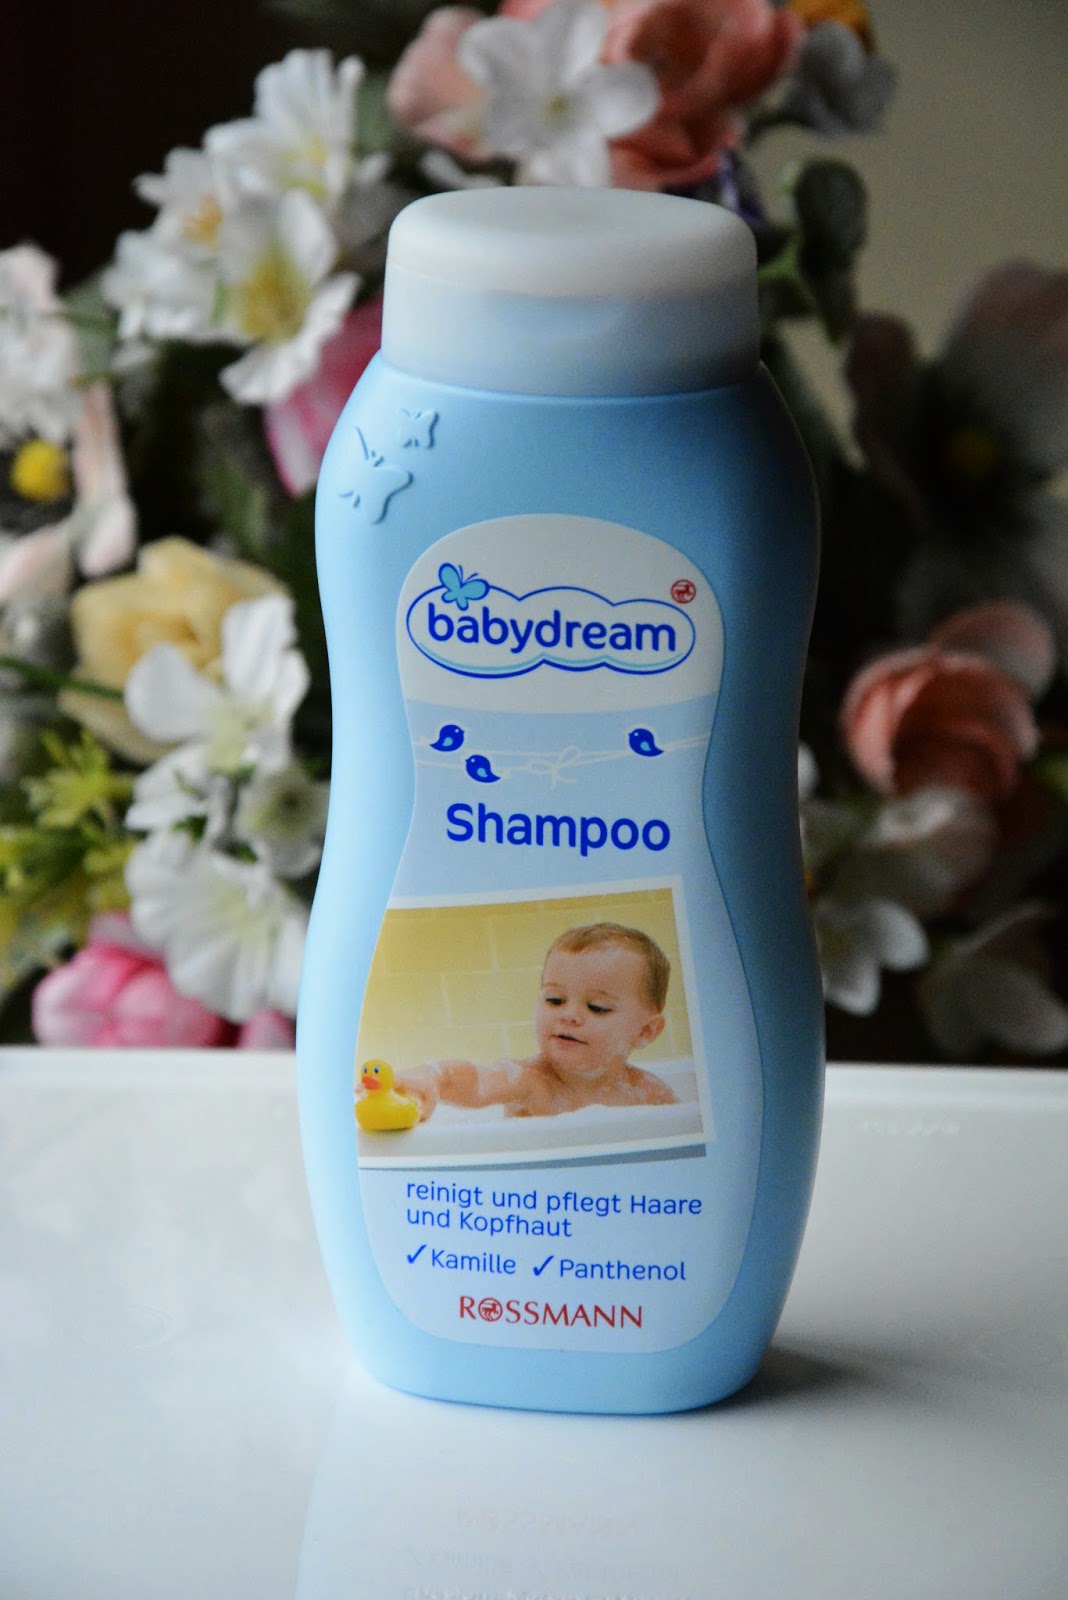 szampon do włosów rossmann babydream